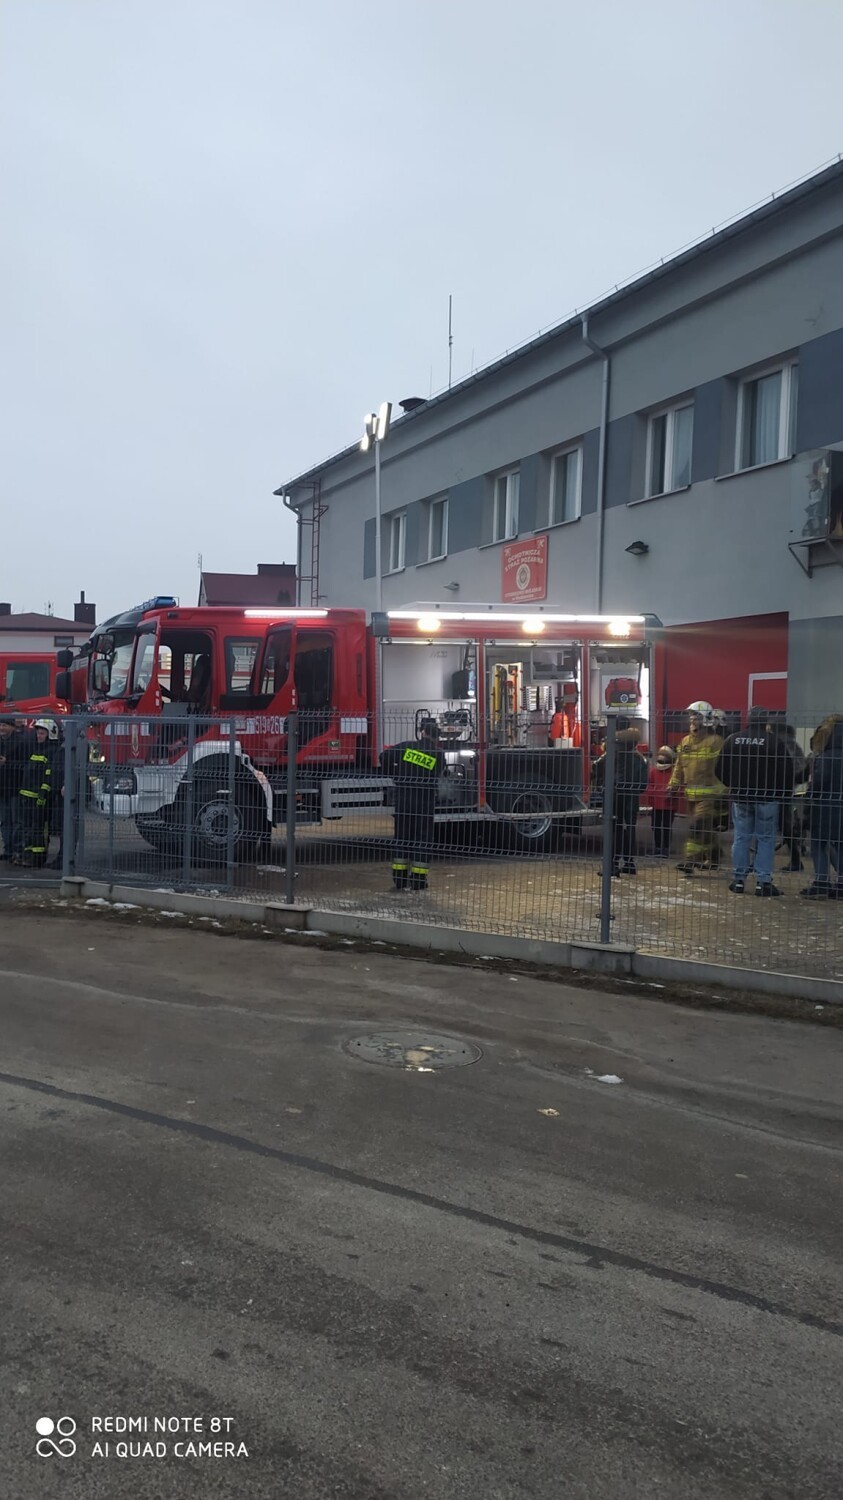 Nowy wóz strażacki dla OSP Stobiecko Miejskie. Strażacy właśnie odebrali samochód